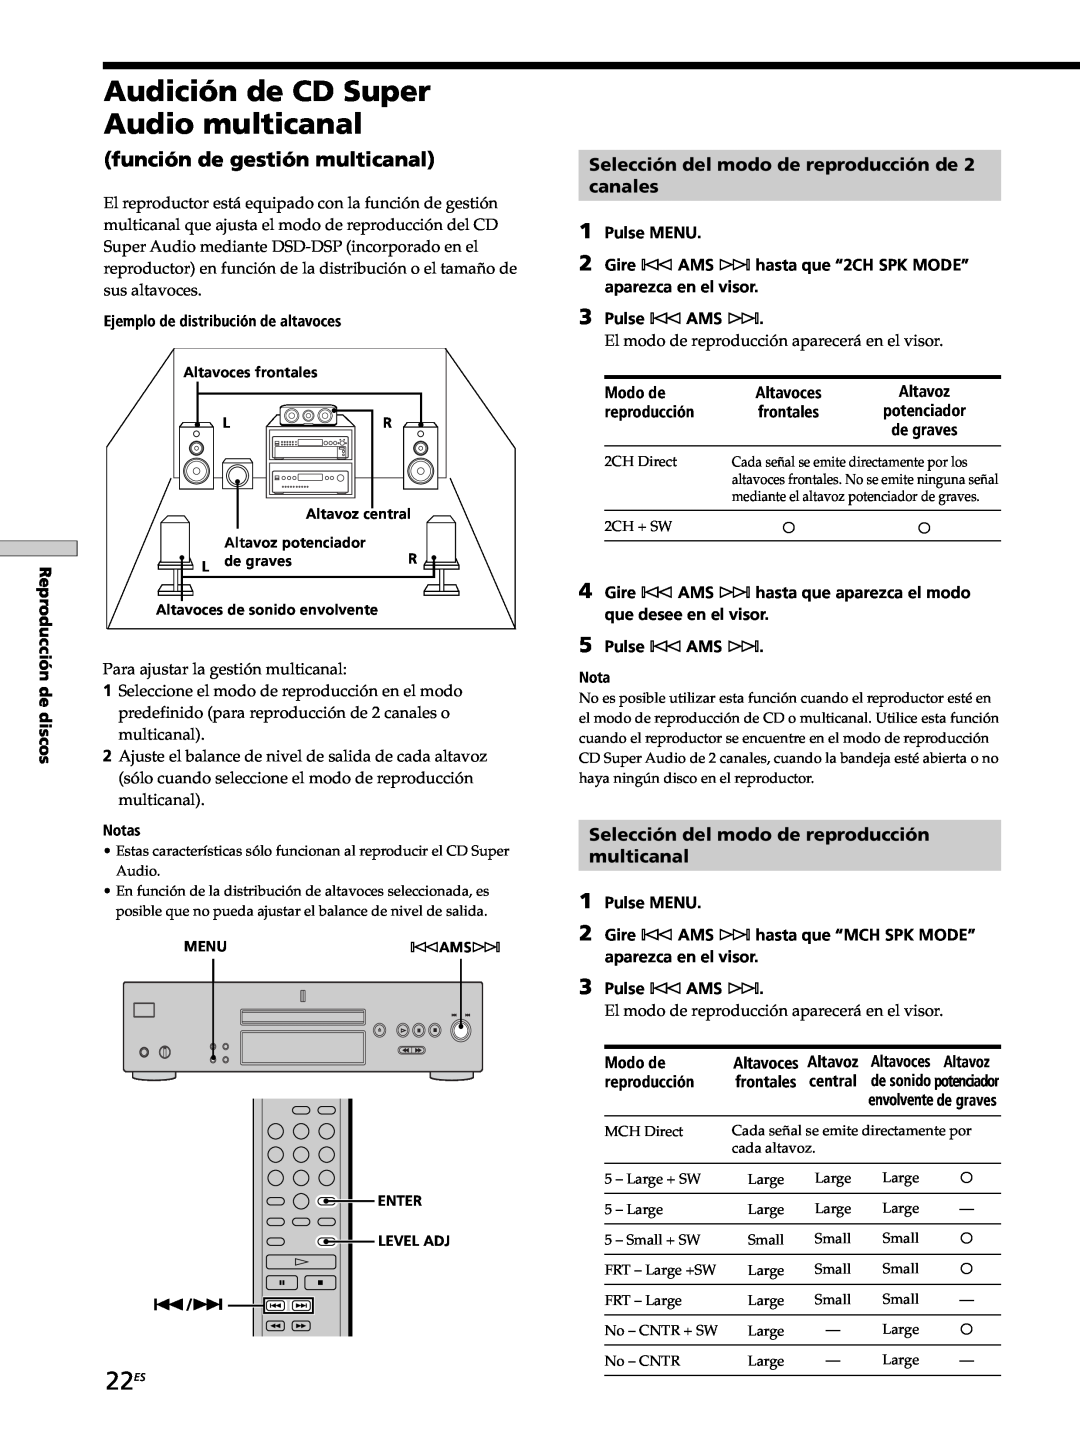 Sony SCD-XB770 operating instructions Audición de CD Super Audio multicanal, 22ES, función de gestión multicanal 